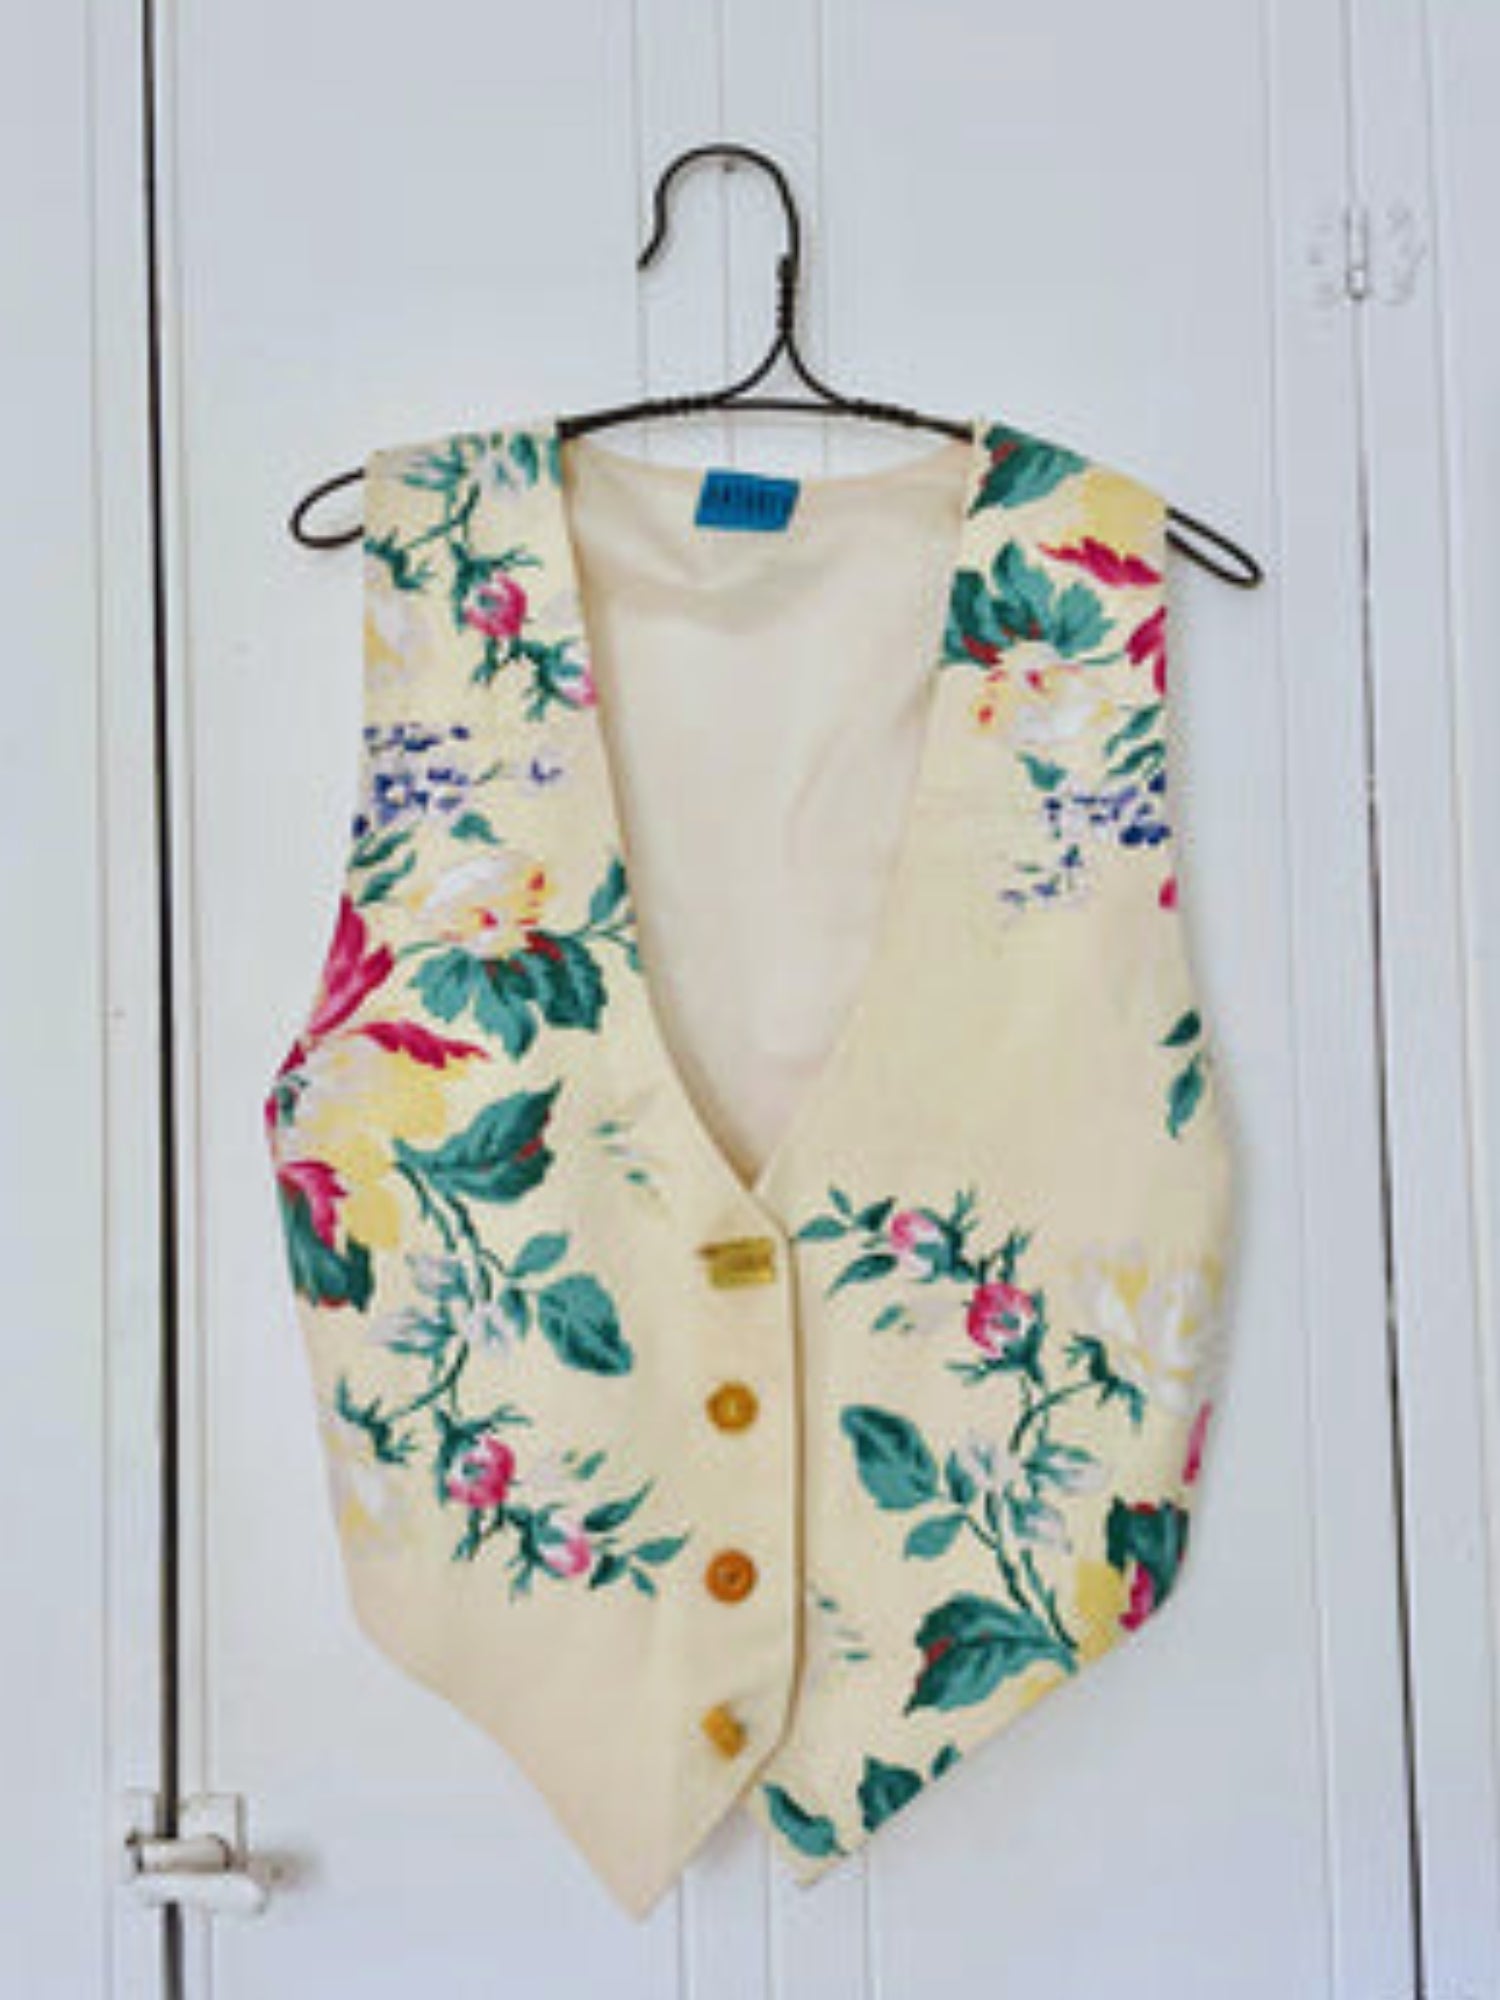 Cheli's floral vintage curtain vest